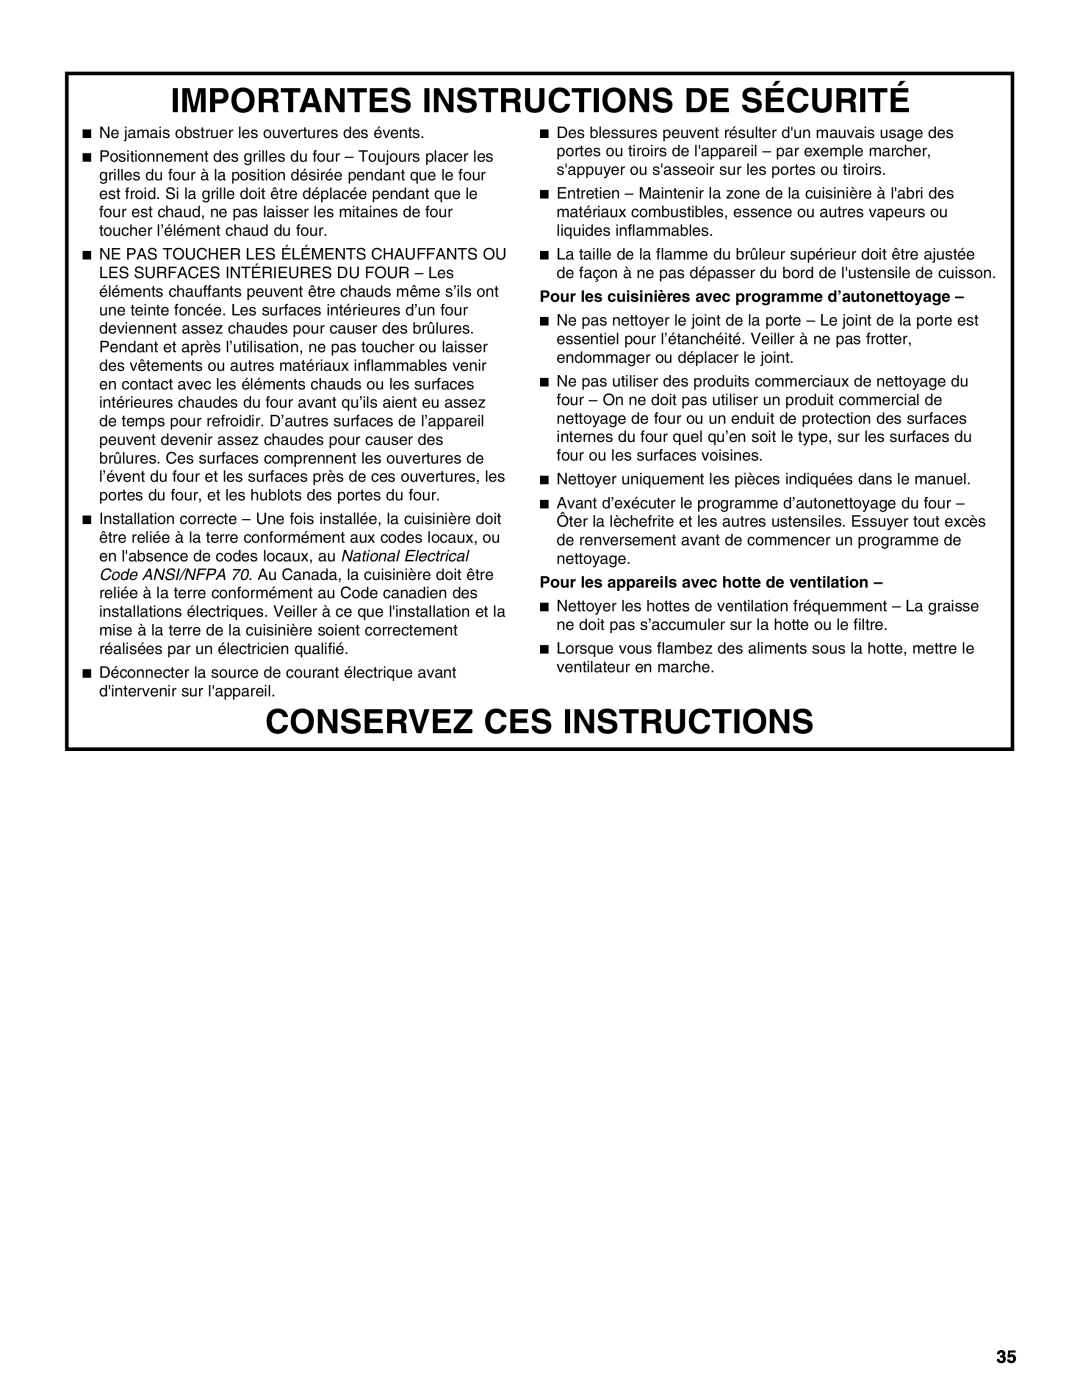 KitchenAid KDRS467, KDRS463, KDRS483, KDRS407, KDRS462 manual Importantes Instructions De Sécurité, Conservez Ces Instructions 